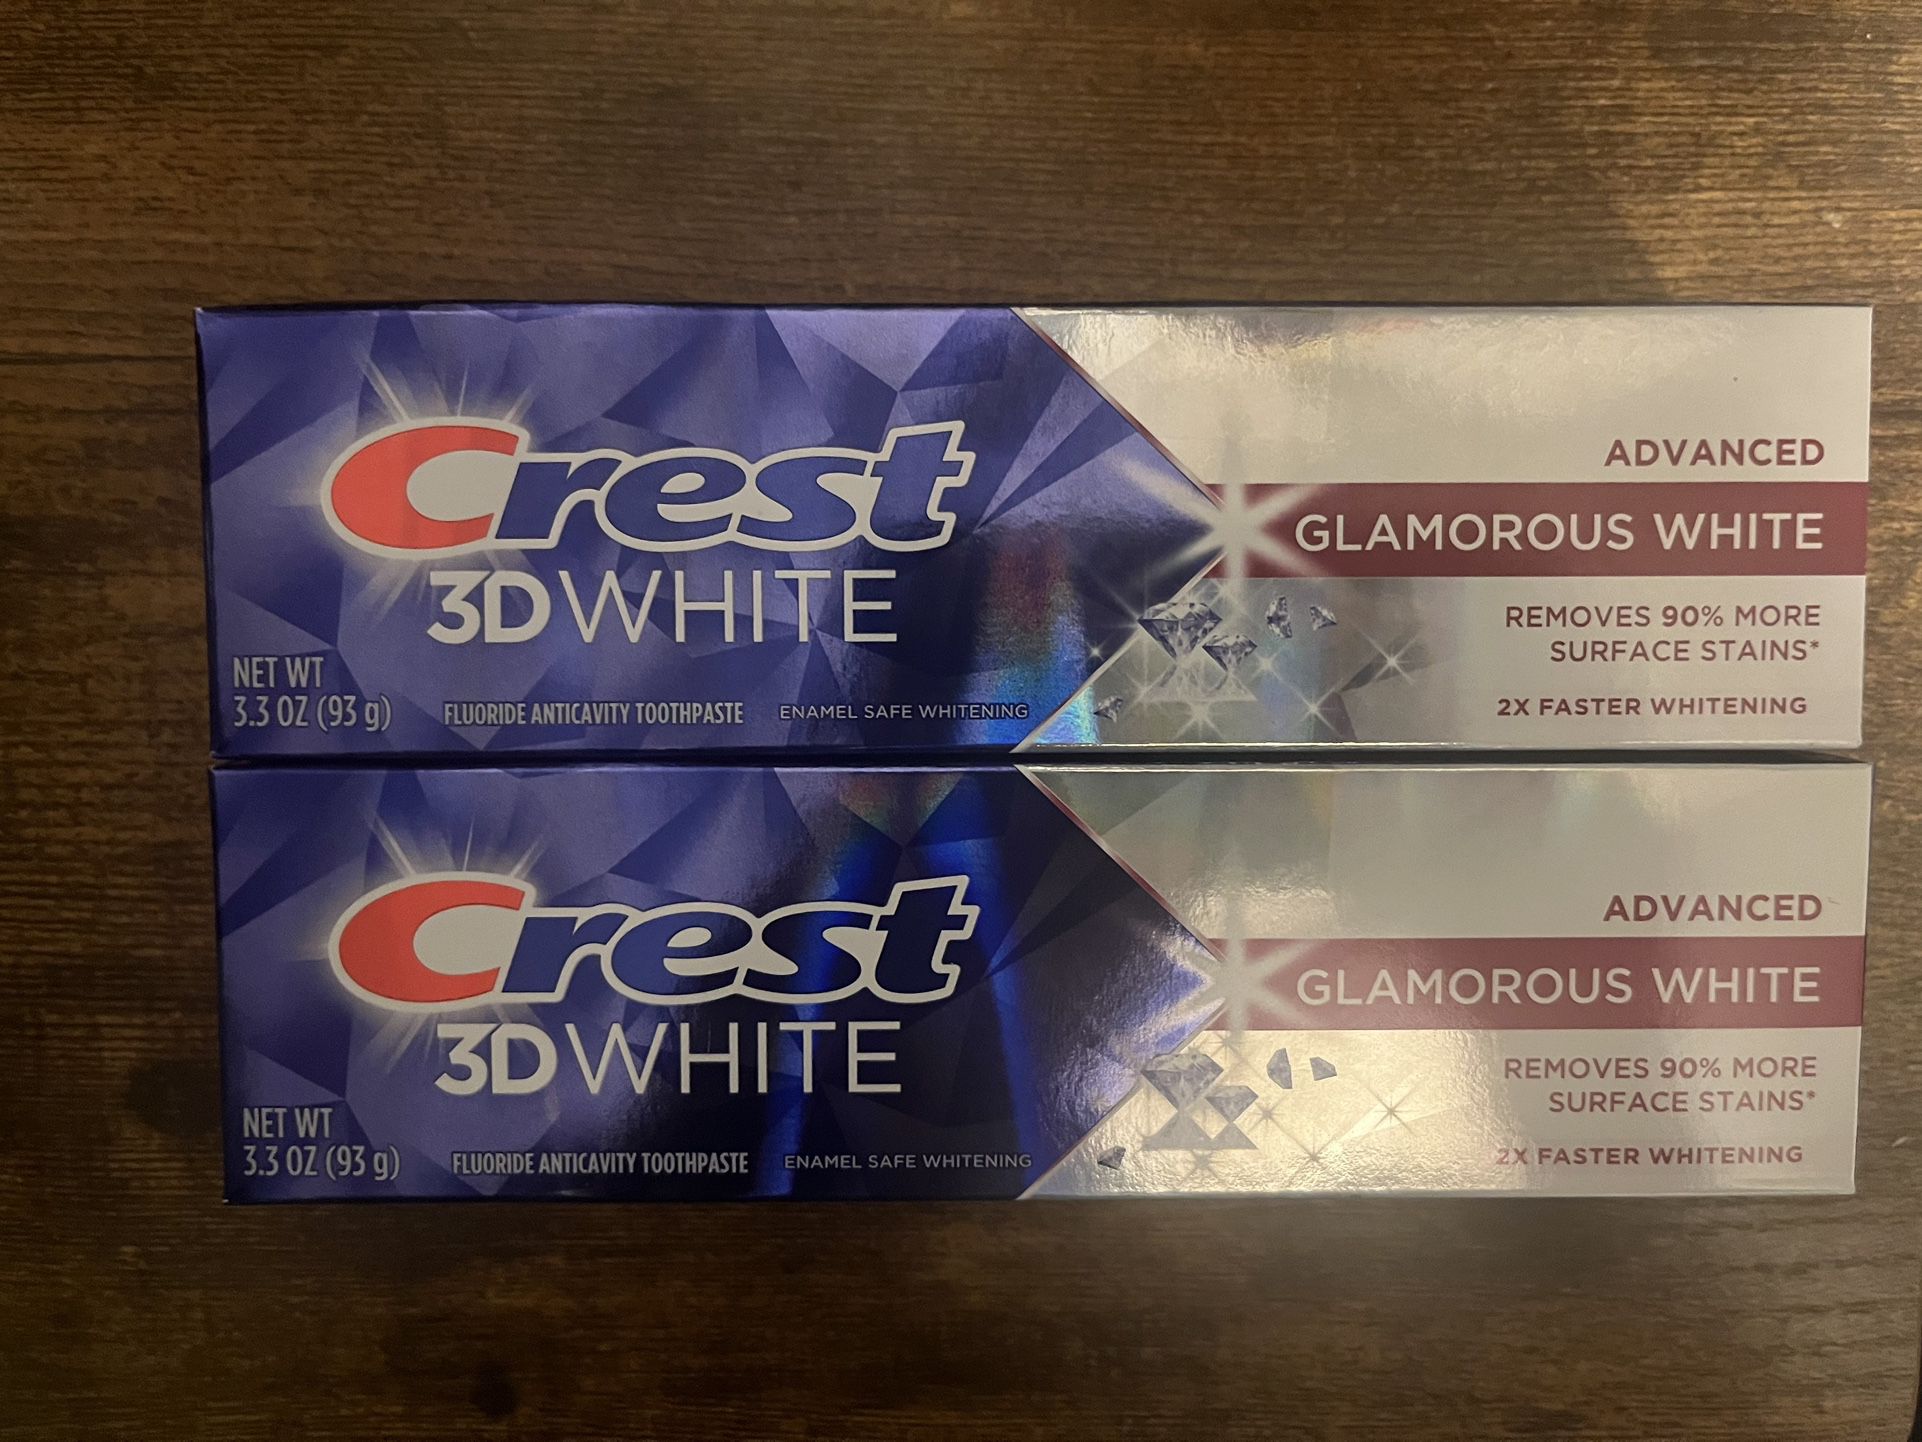 Crest 3D White Advanced Glamorous White Toothpaste 2/$5